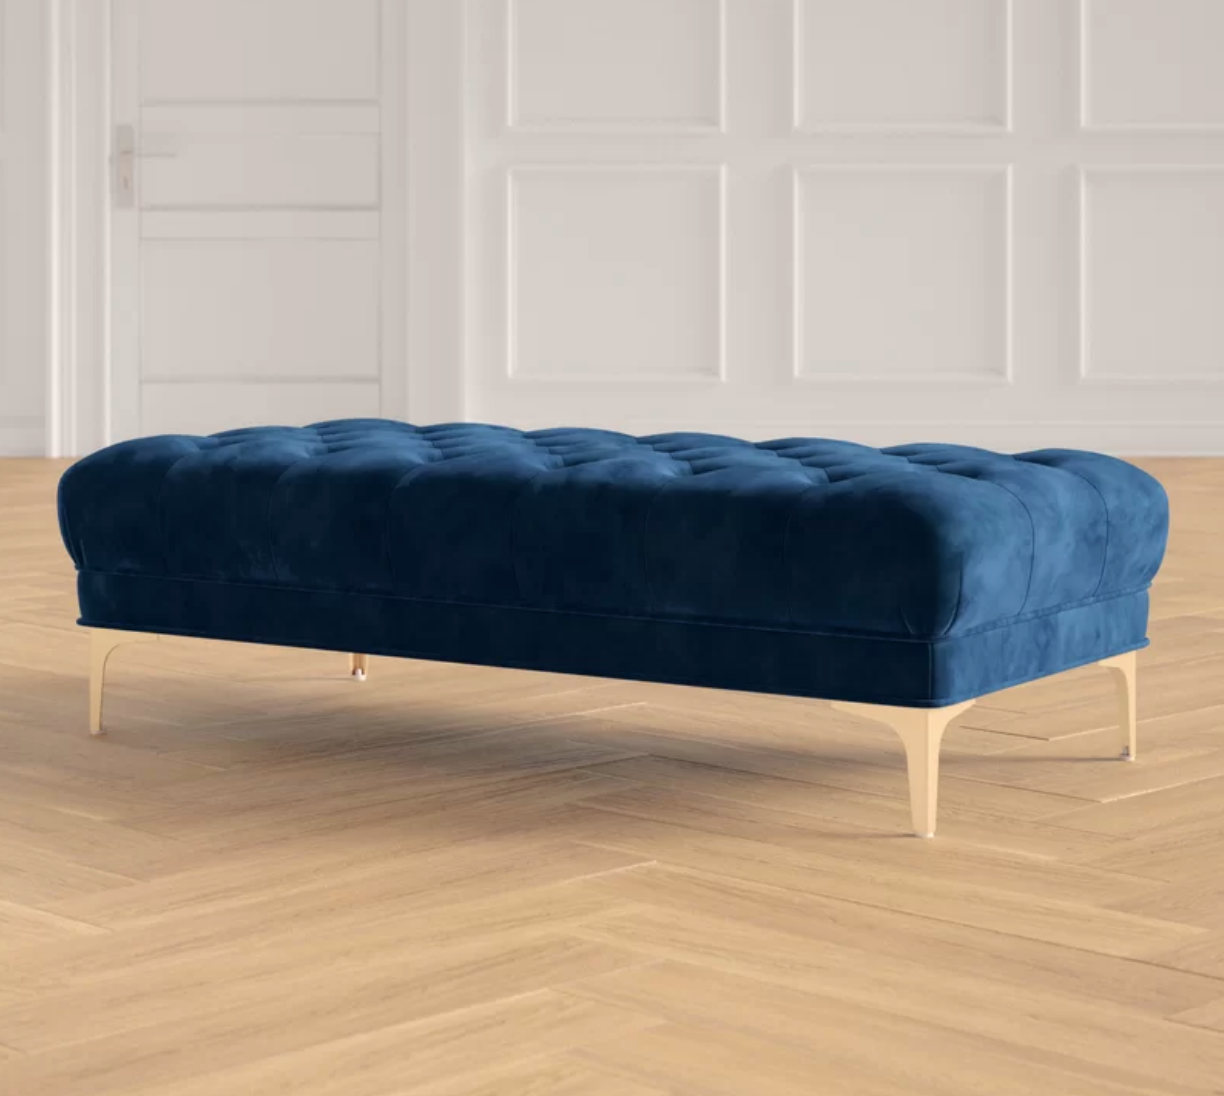 Skye Upholstered Bench - $380 - Joss &amp; Main 